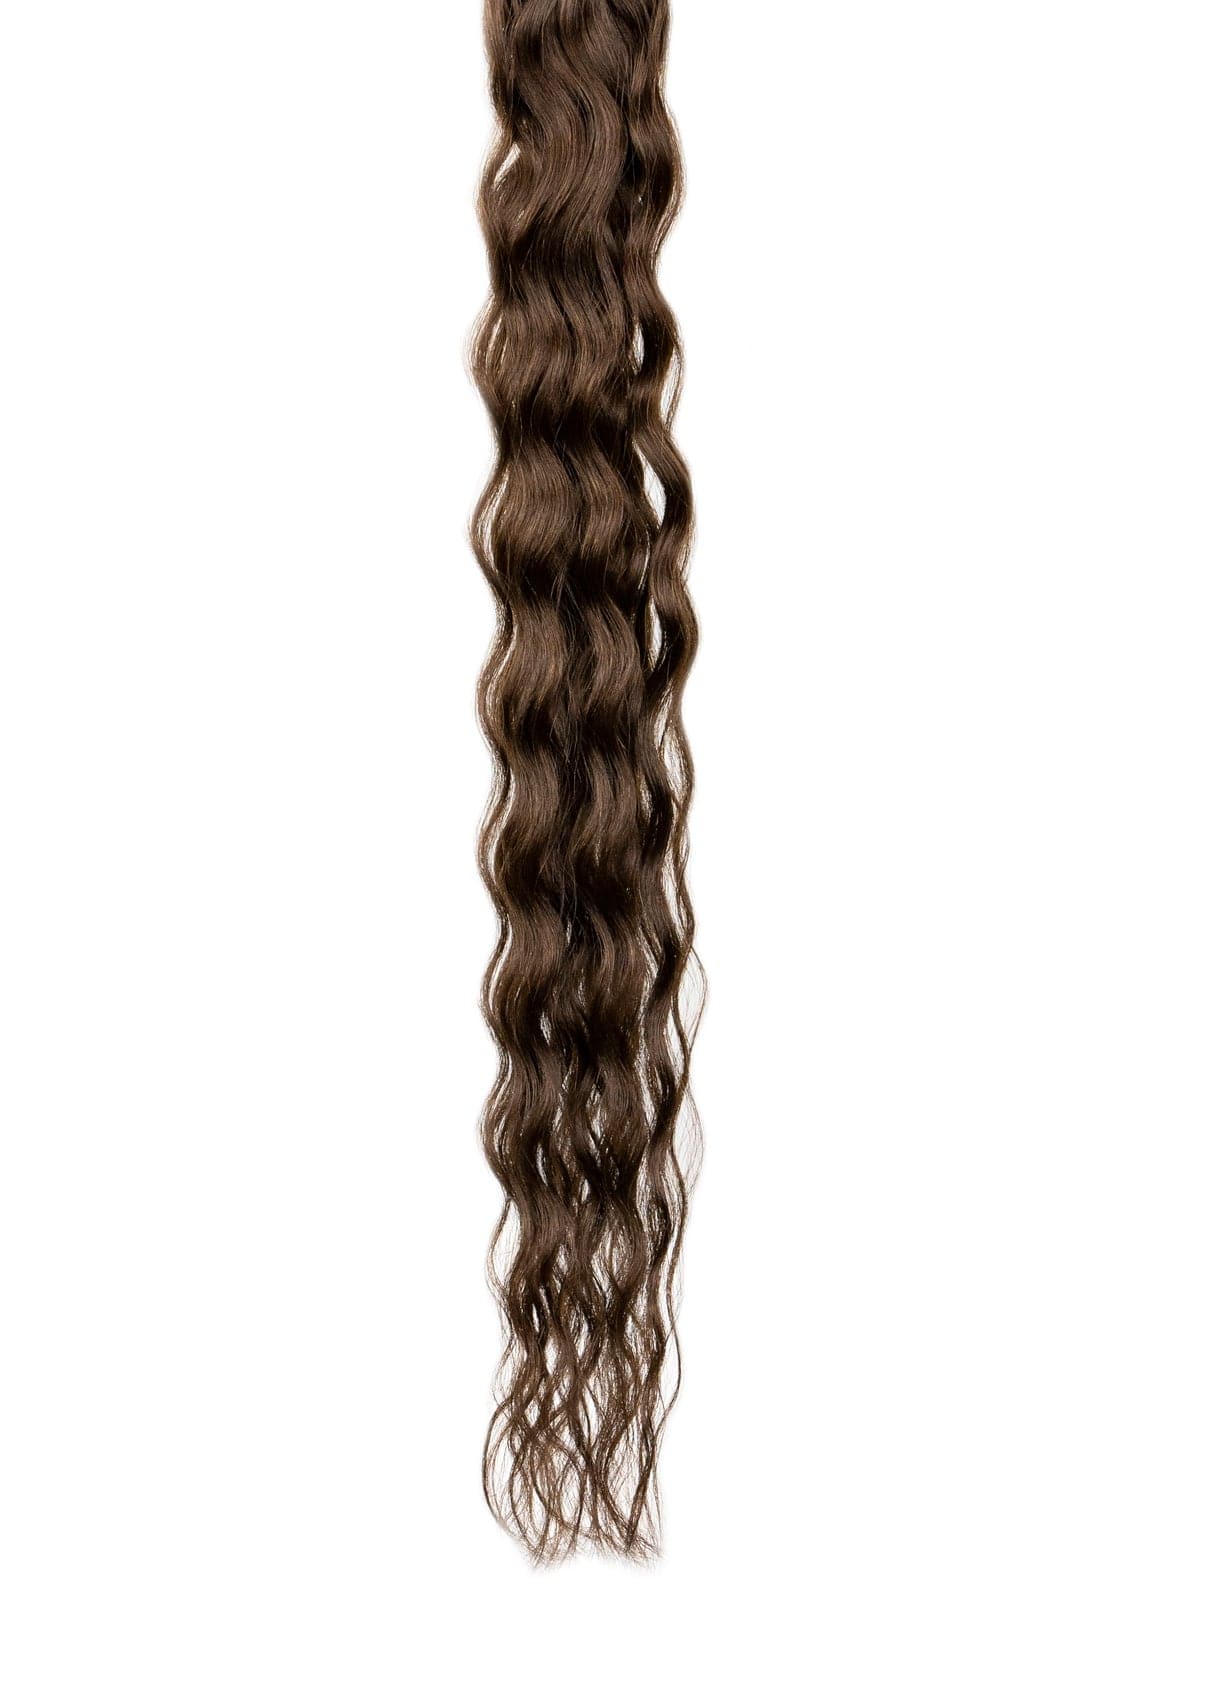 Kera-Link Pro Curly Color #4 Dark Brown